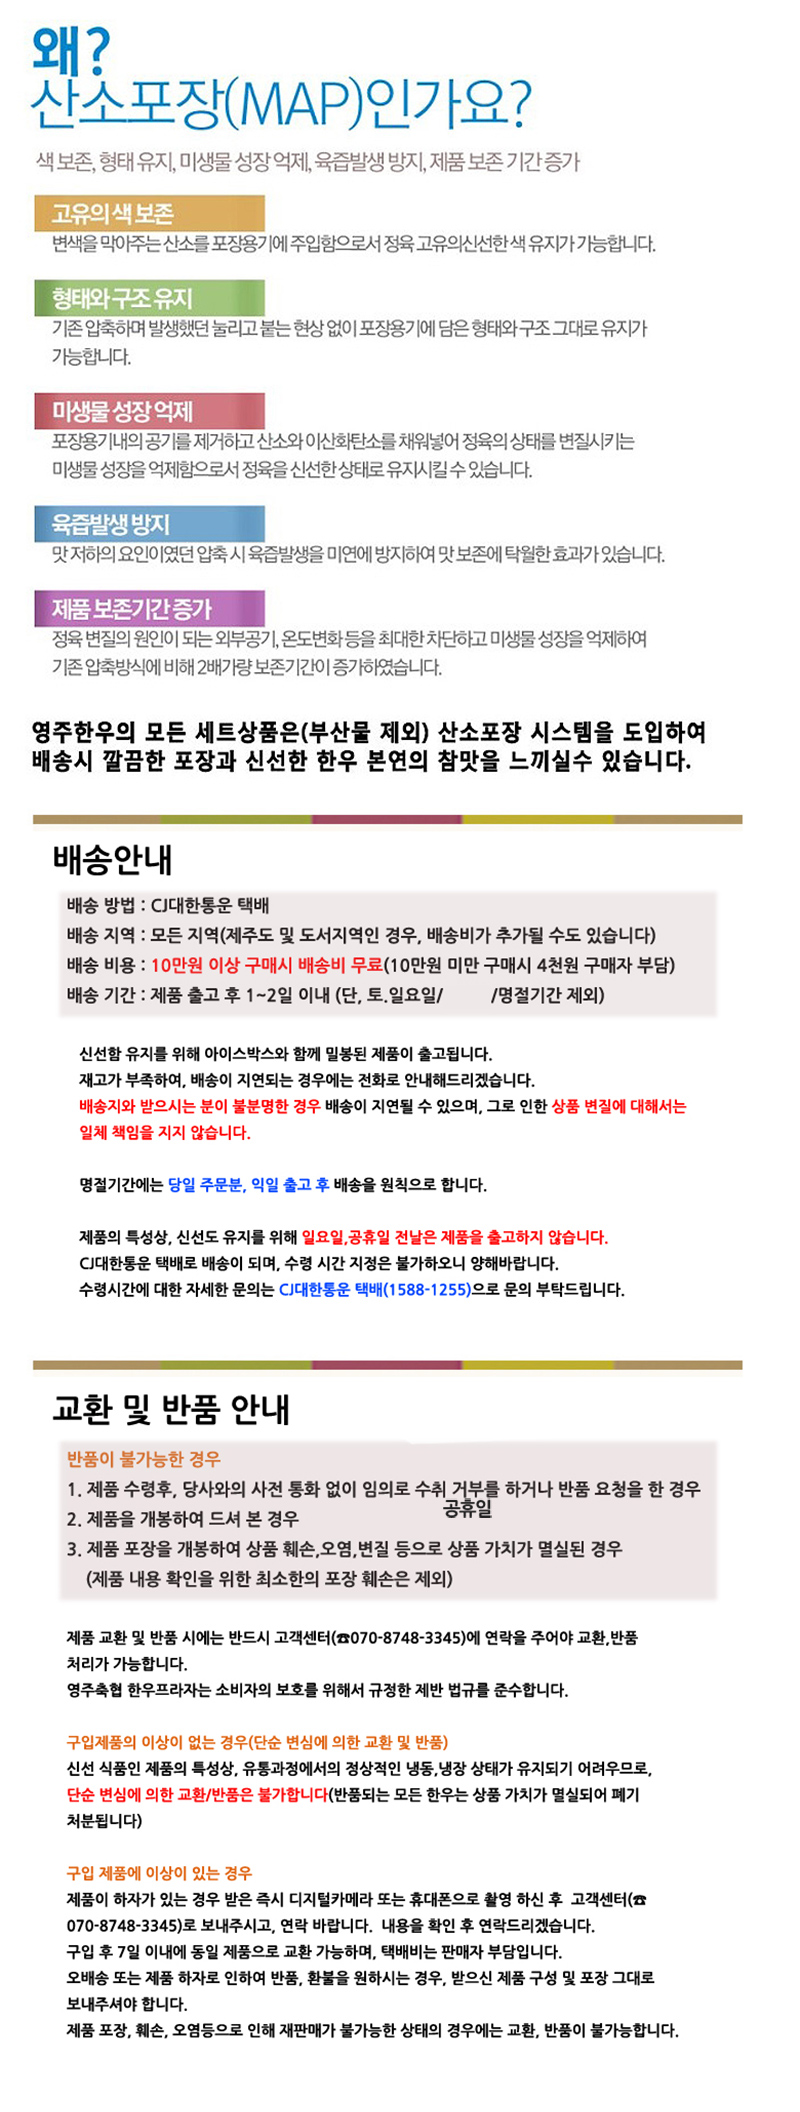 yeongjuchughyeob-yeongju_hanu_teugseon_6ho_detail_800_8.jpg